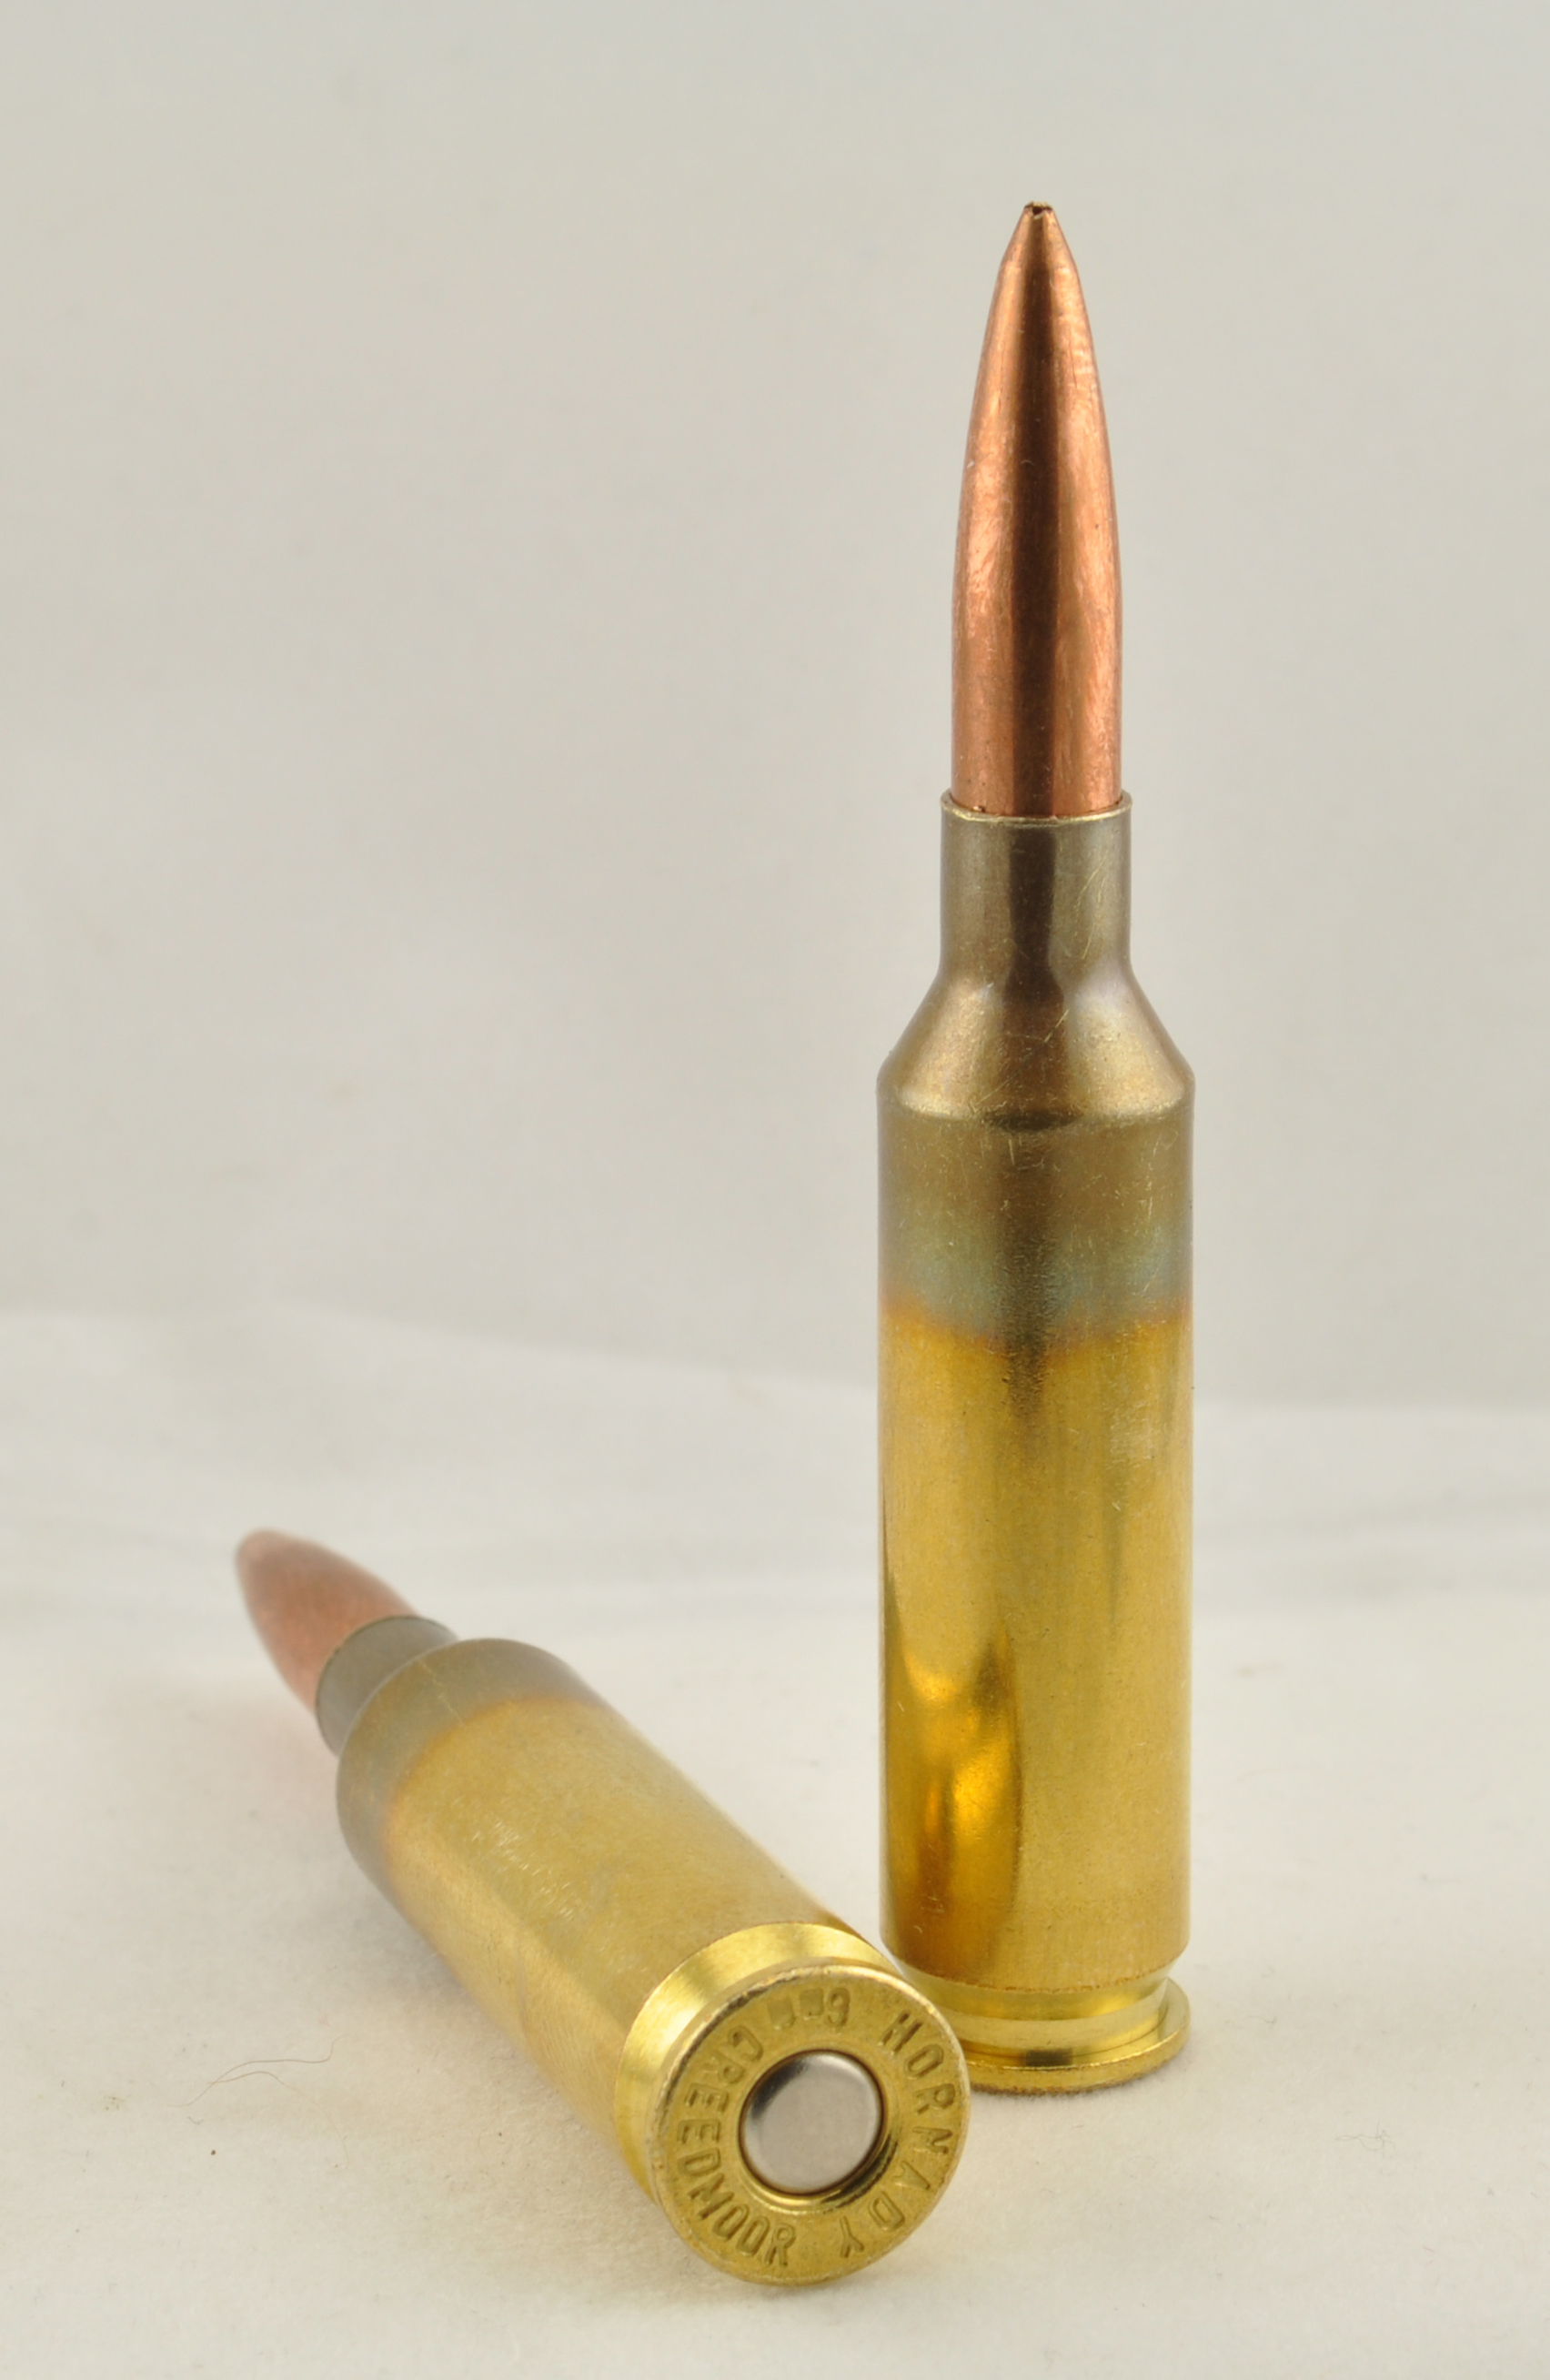 A 6mm Creedmoor A Következő Nagy Dolog A Nagy Távolságú Lövészetnél